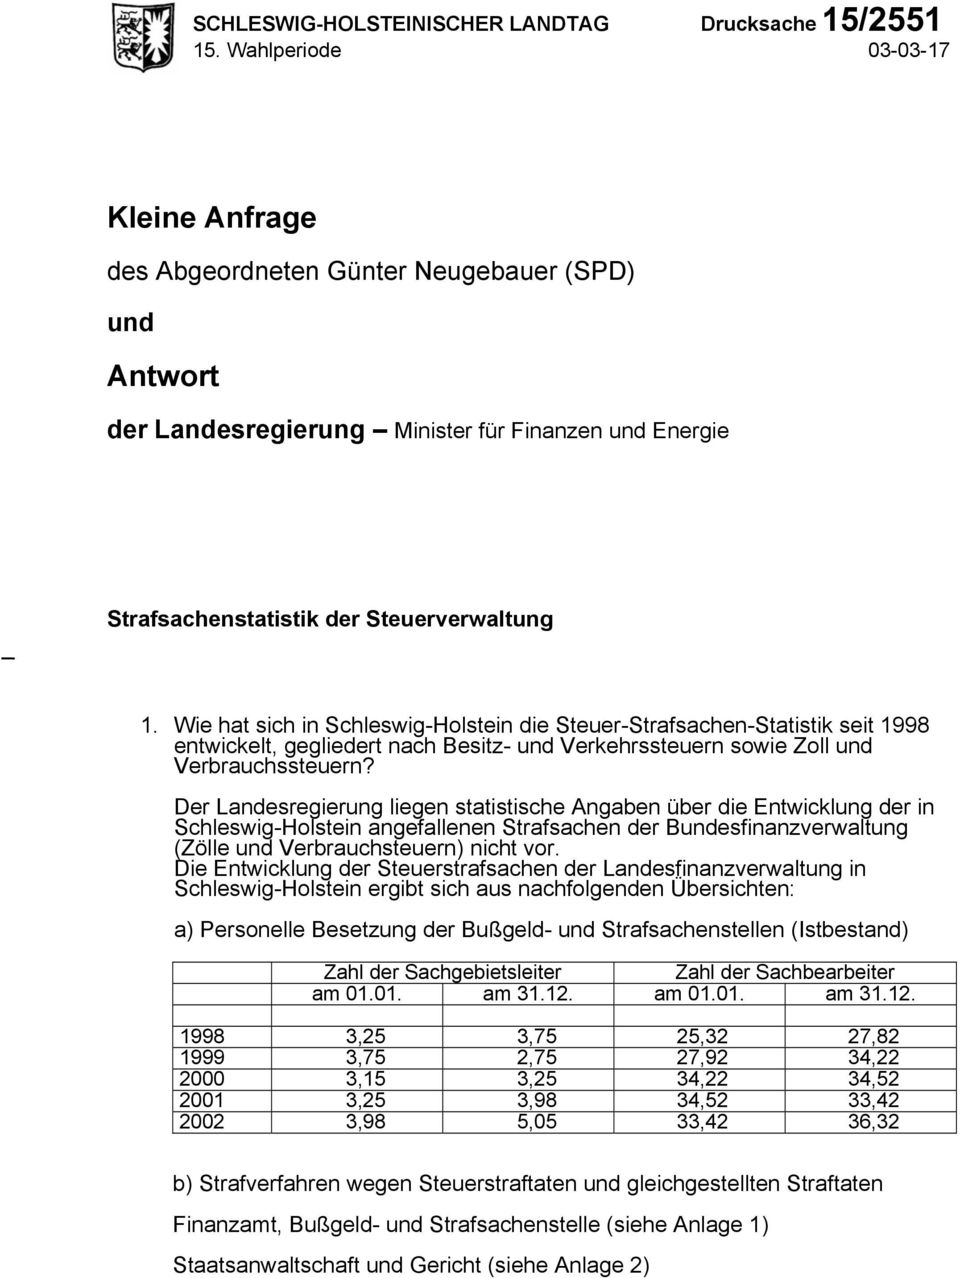 Wie hat sich in Schleswig-Holstein die Steuer-Strafsachen-Statistik seit 1998 entwickelt, gegliedert nach Besitz- und Verkehrssteuern sowie Zoll und Verbrauchssteuern?